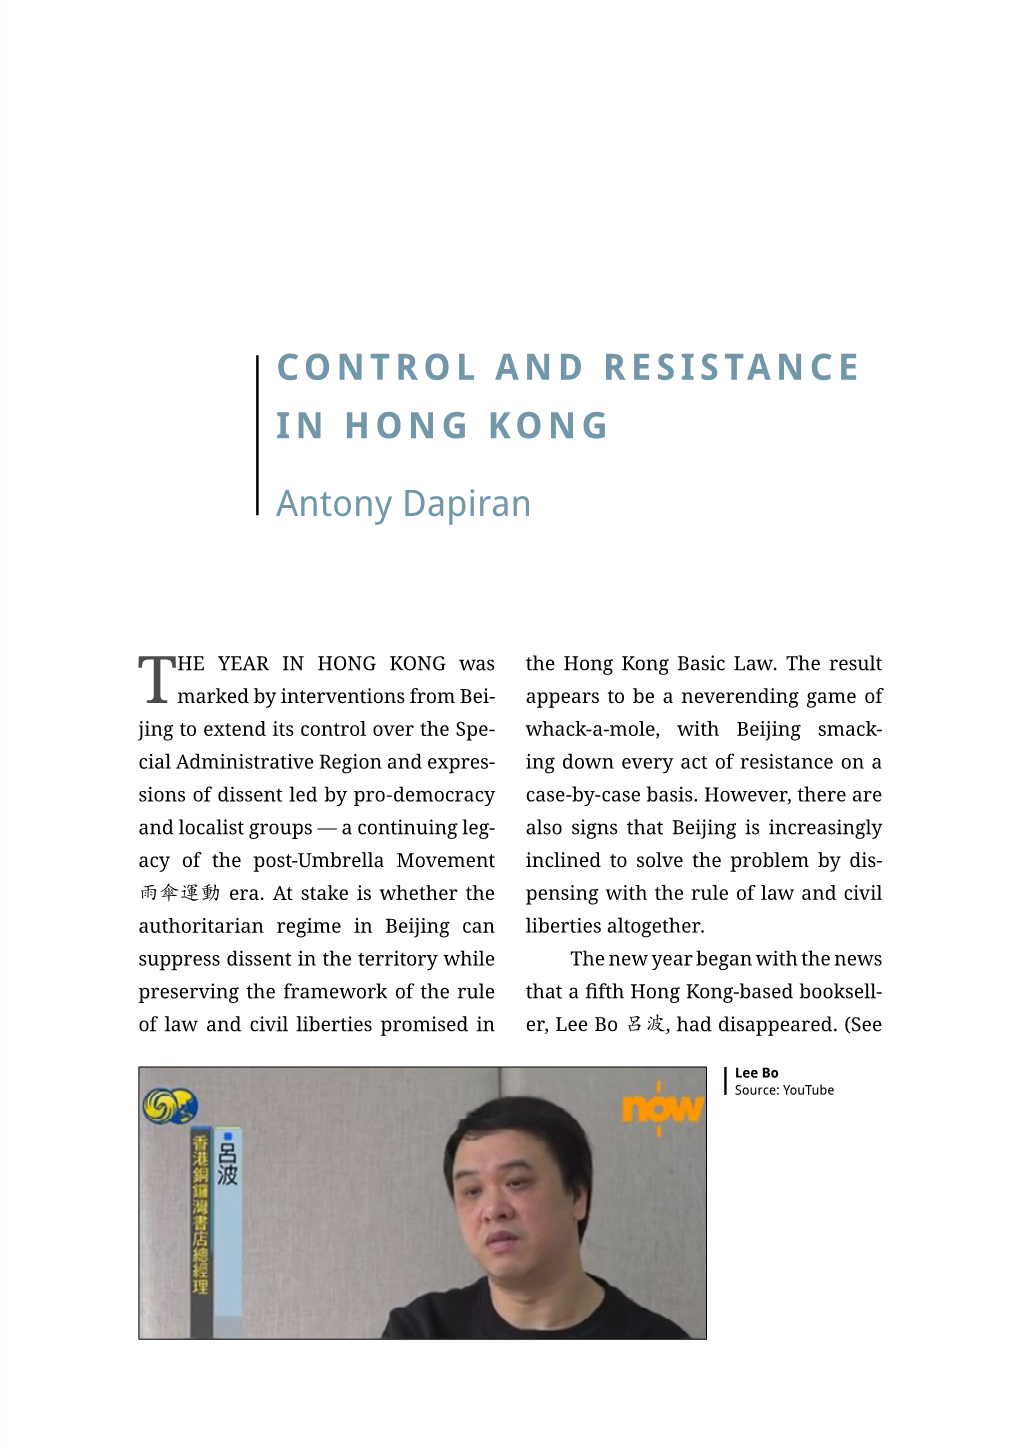 Control and Resistance in Hong Kong Antony Dapiran Hong Kong Street Food, Fishballs Source: Bryan..., Flickr Scenes on Hong Kong’S Streets in Many 2016 Years